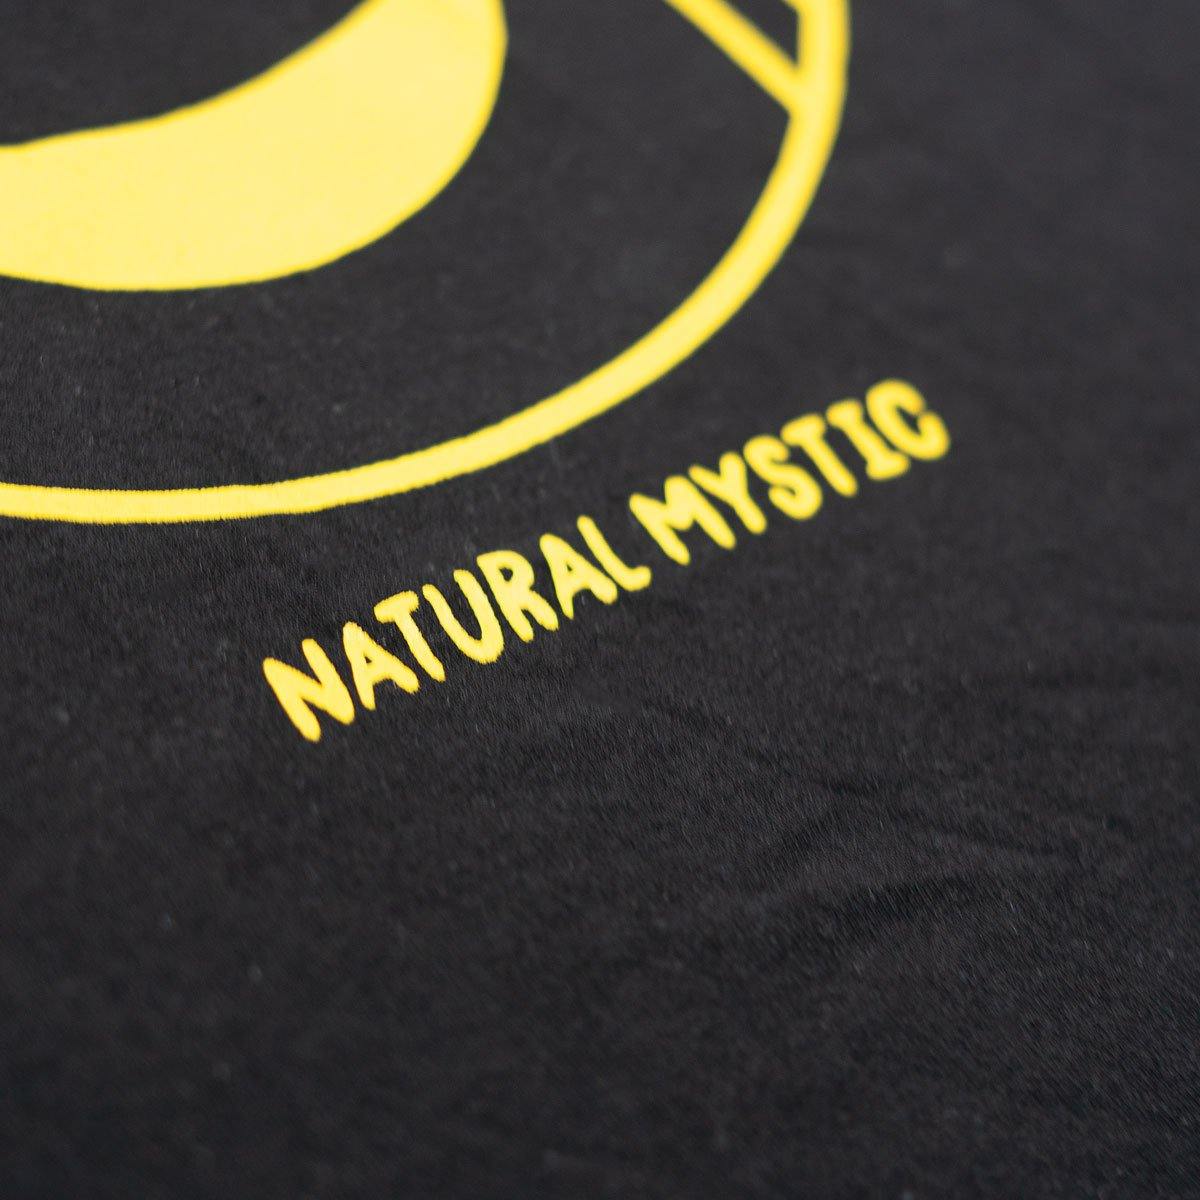 Camiseta Negra "Natural Mystic" Hombre - Alpargataspachas